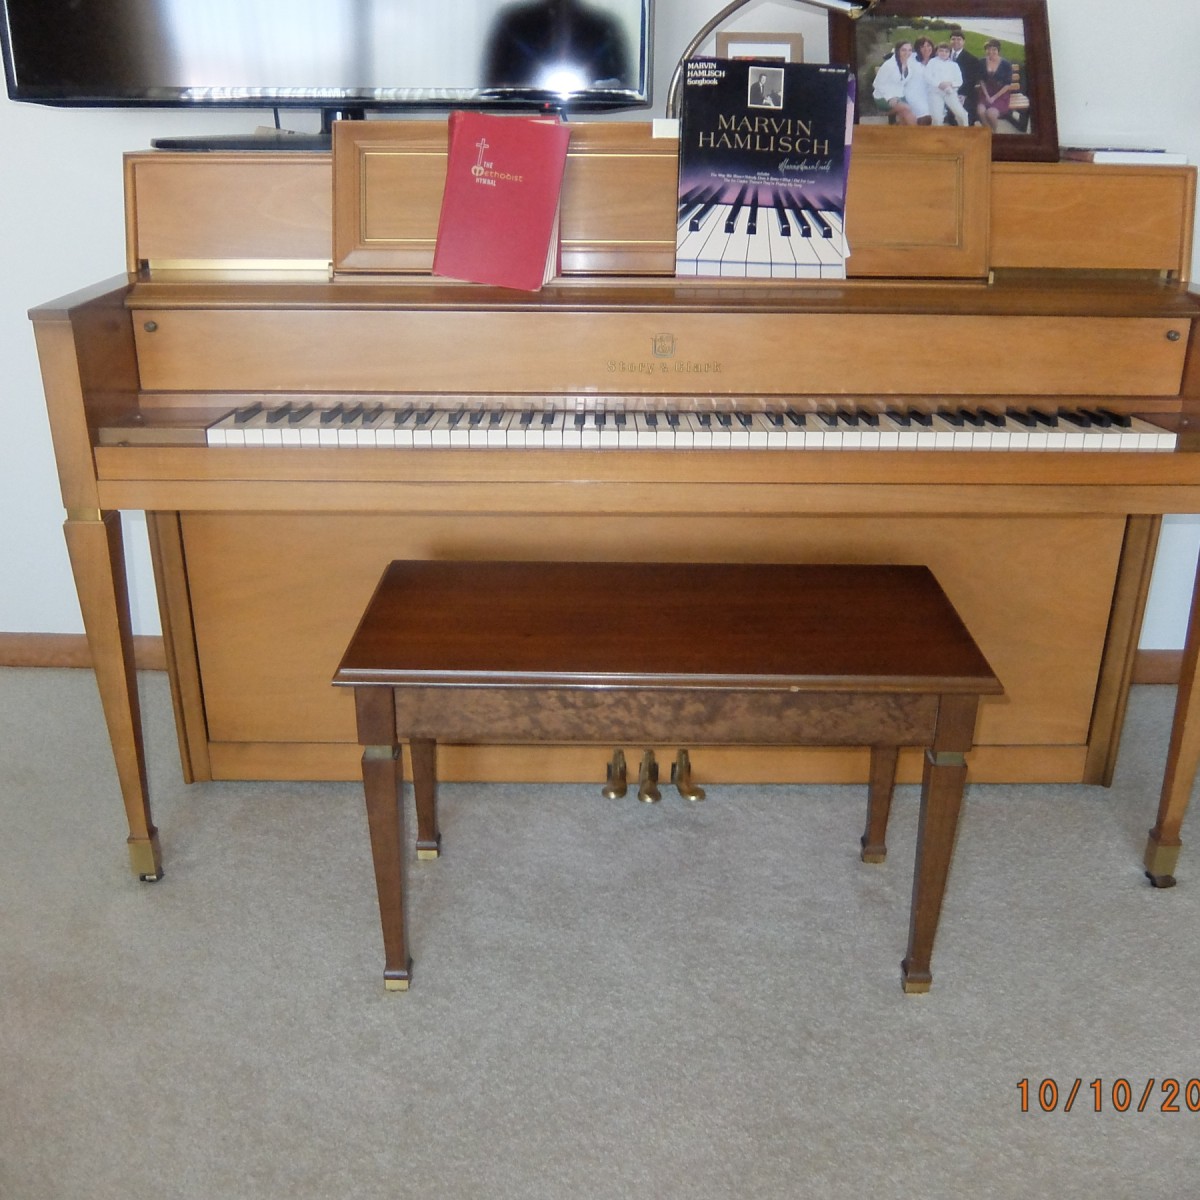 e.g. harrington 66481 piano value